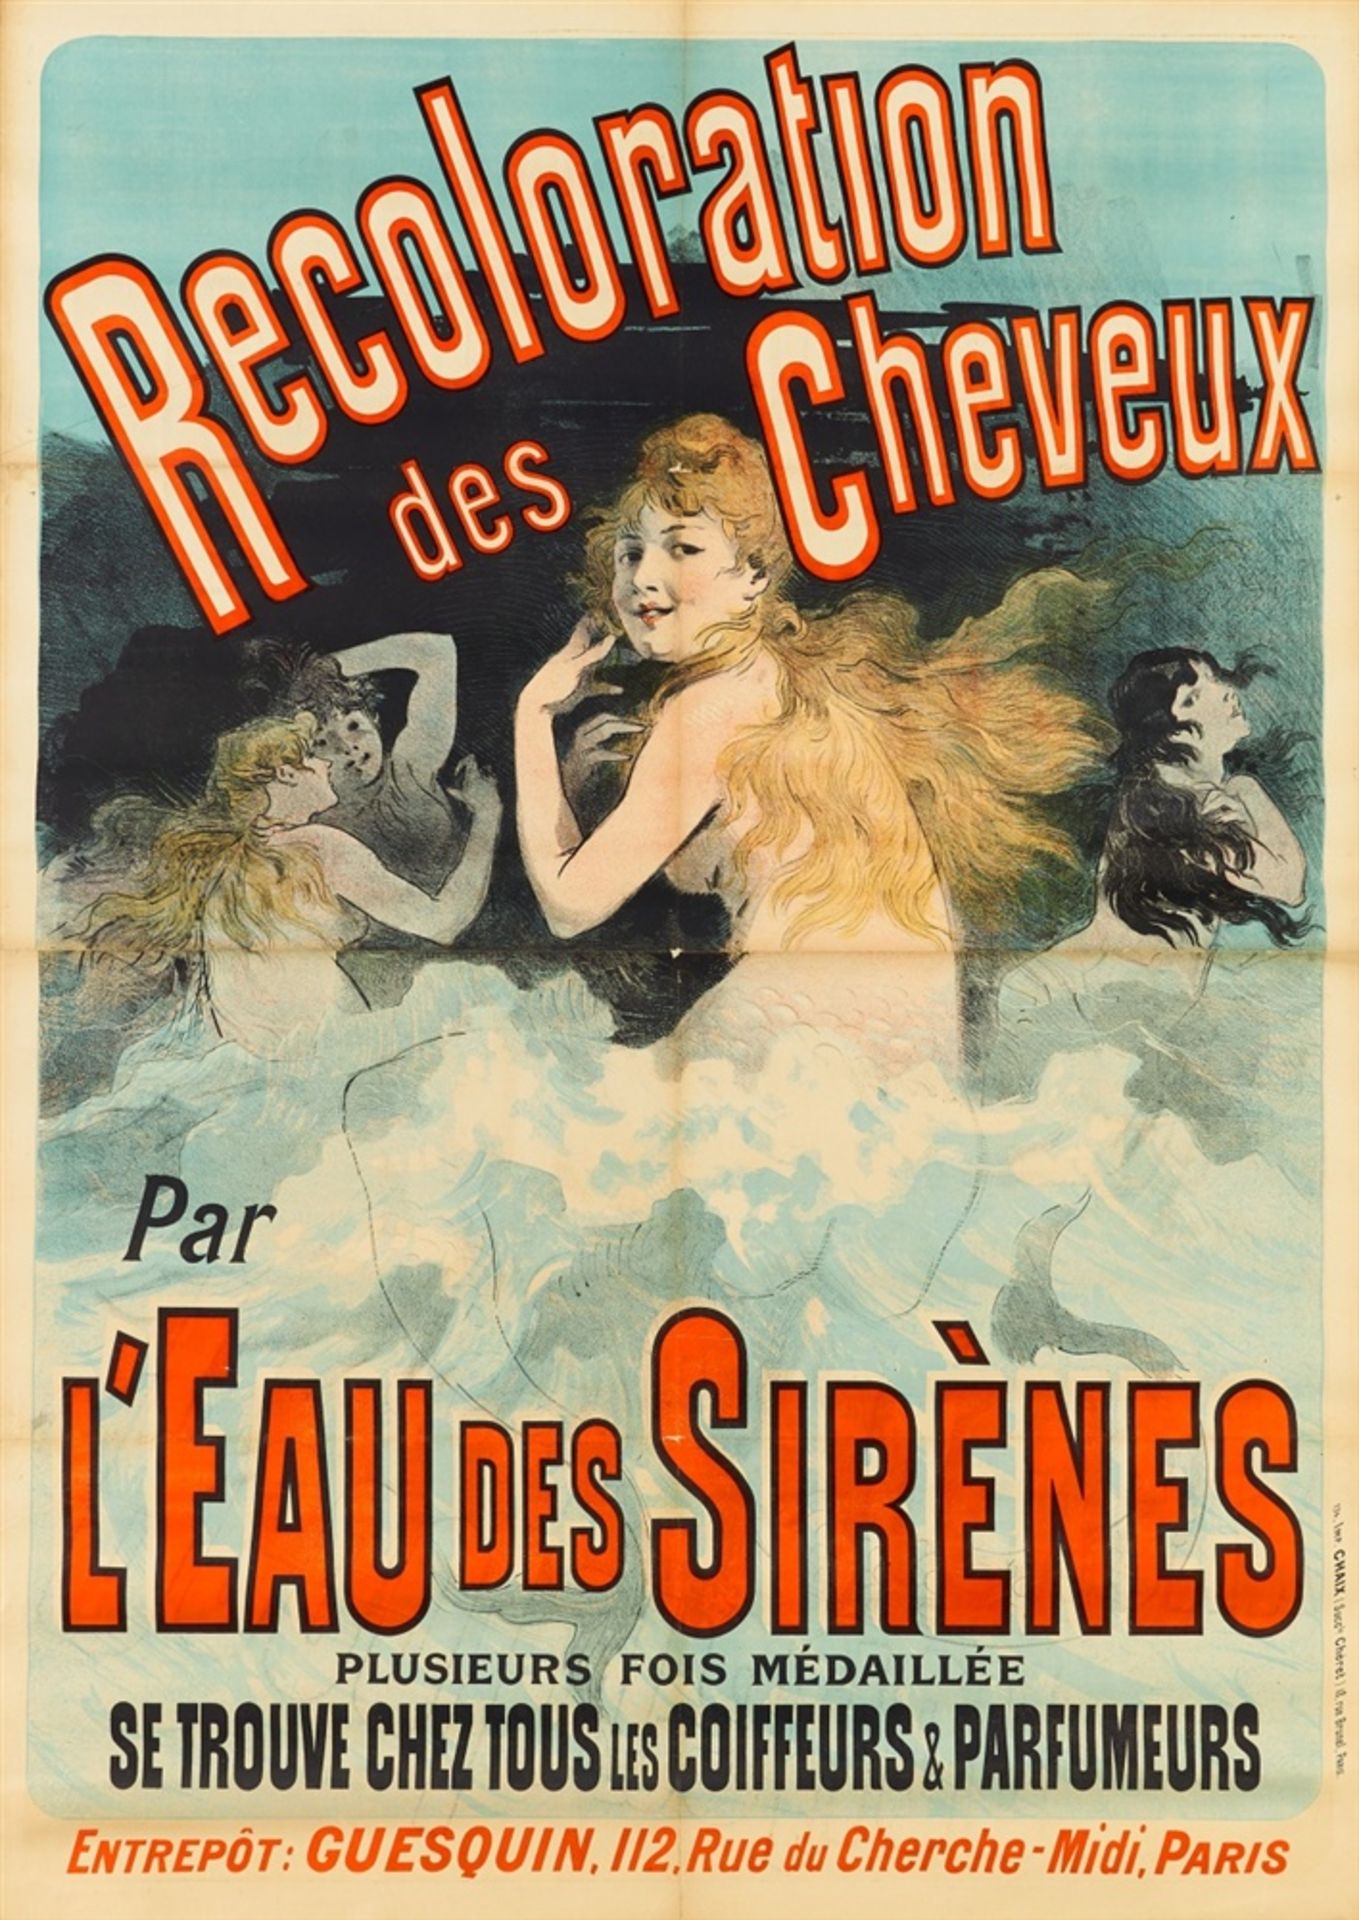 JULES CHÉRET 1836 - 1932RECOLORATION DES CHEVEUX – L'EAU DES SIRÈNES 1888Farblithographie, auf